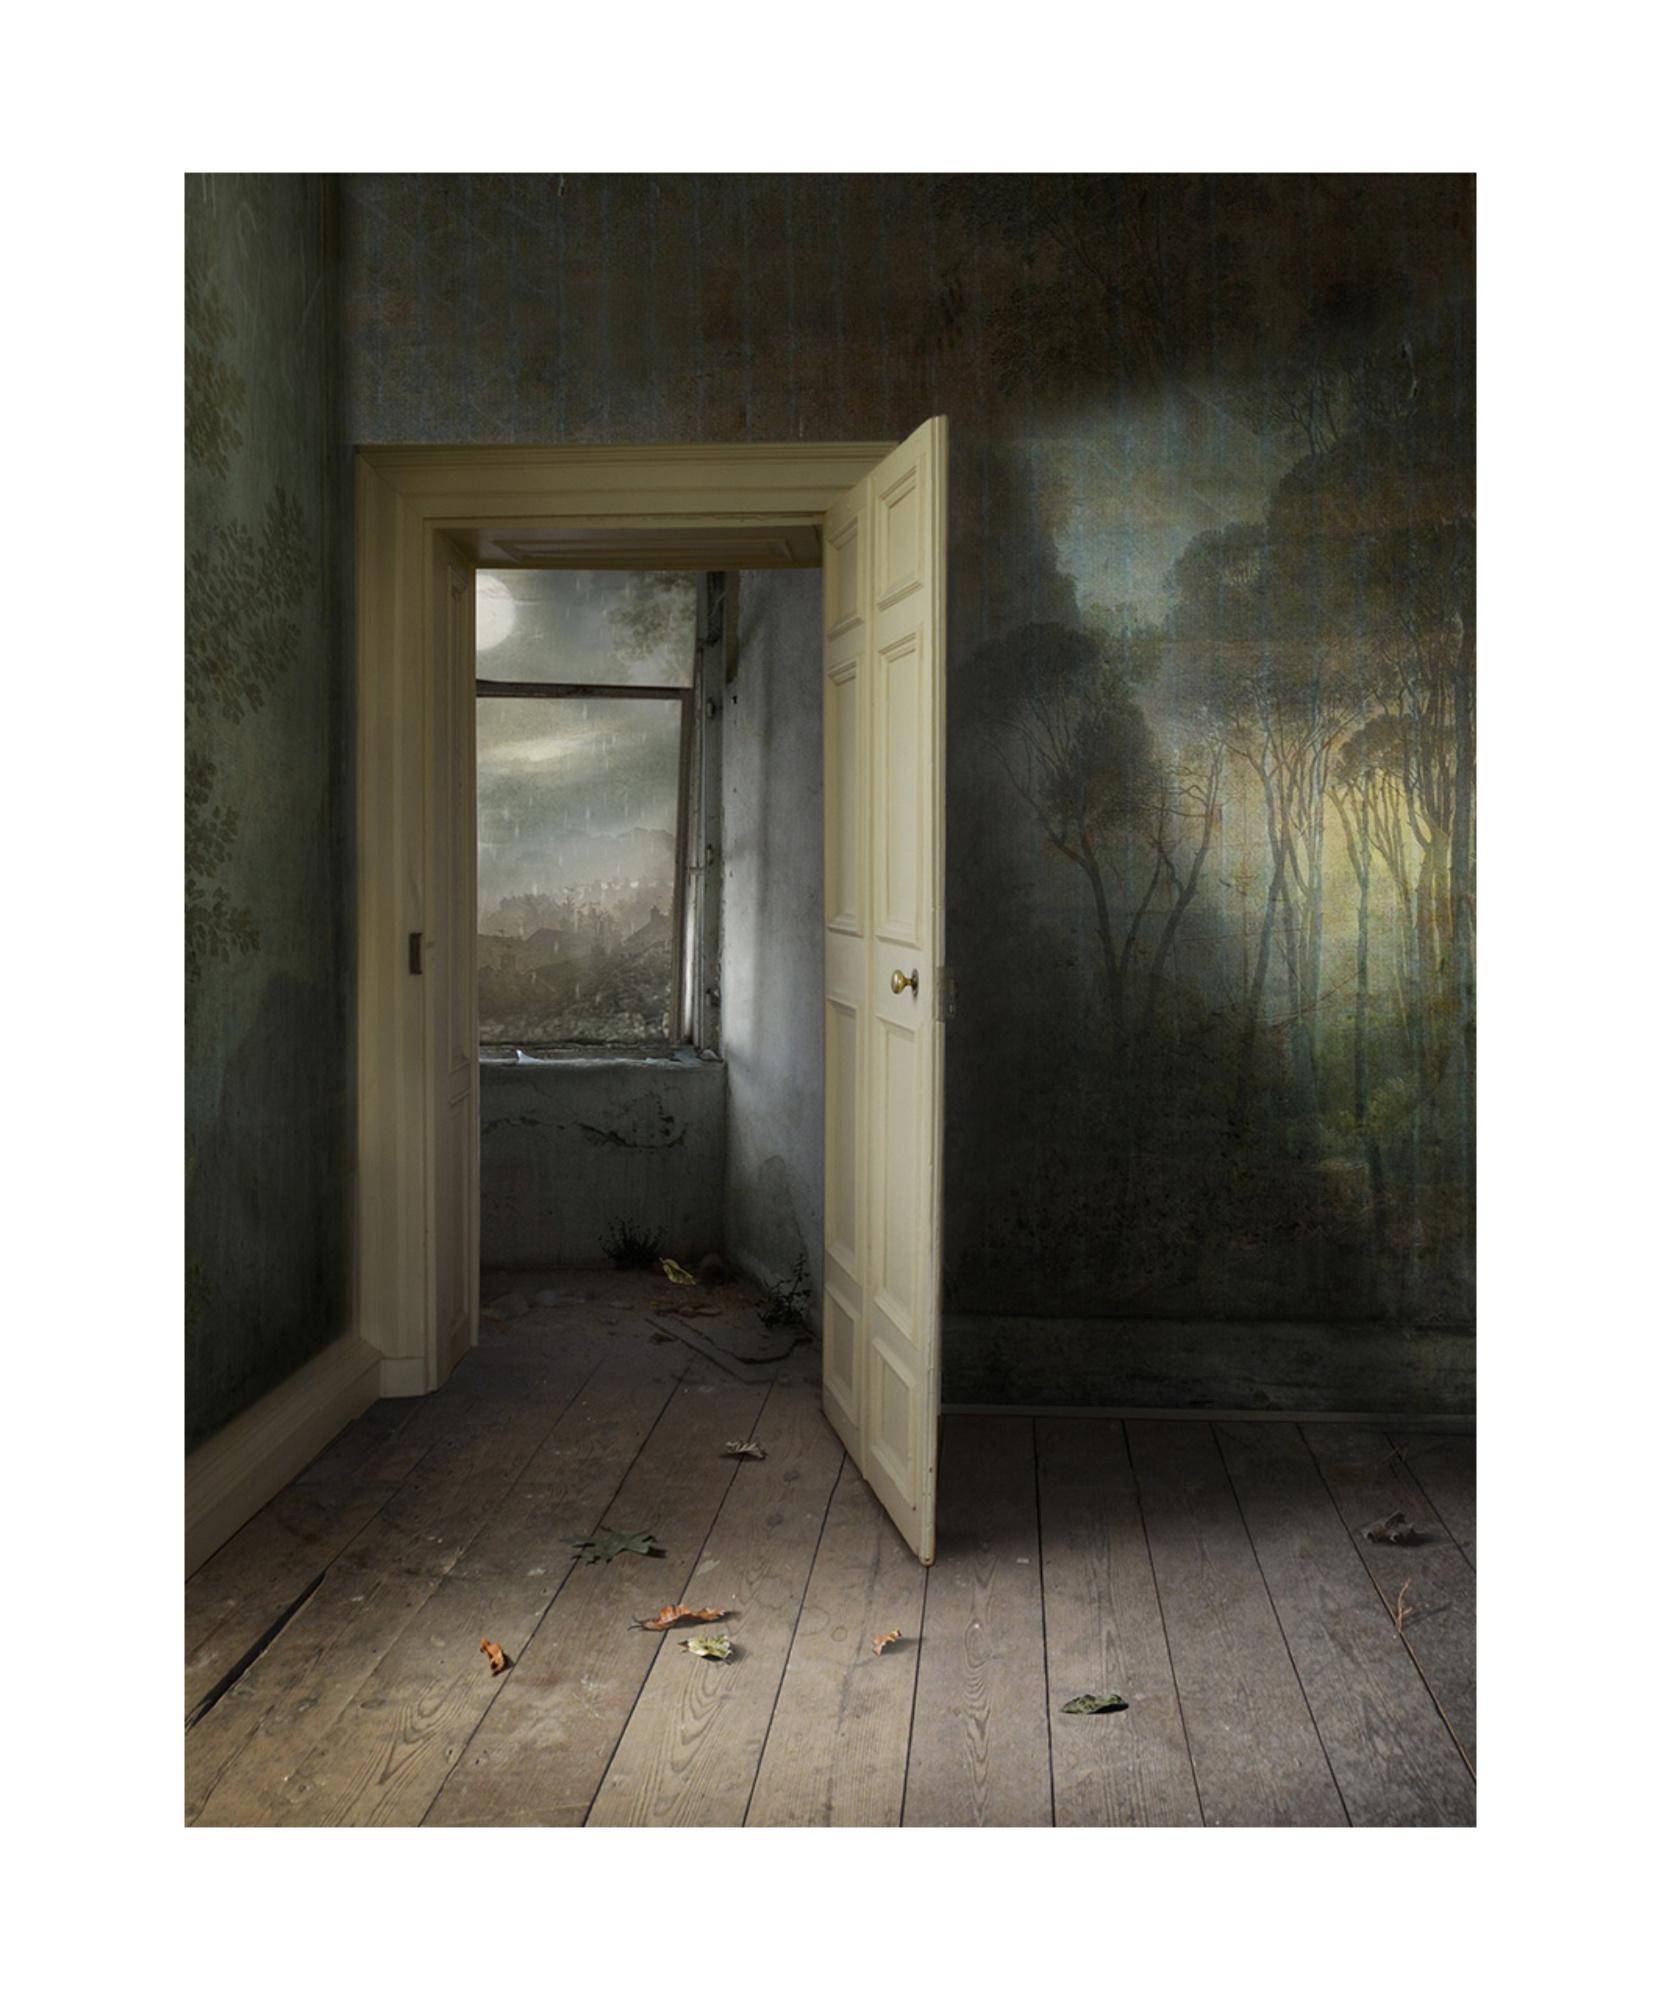 Suzanne Moxhay Figurative Photograph – Interieur mit offener Tür – Fotomontage, Archivalisches Pigmentdruck, Inneneinrichtung